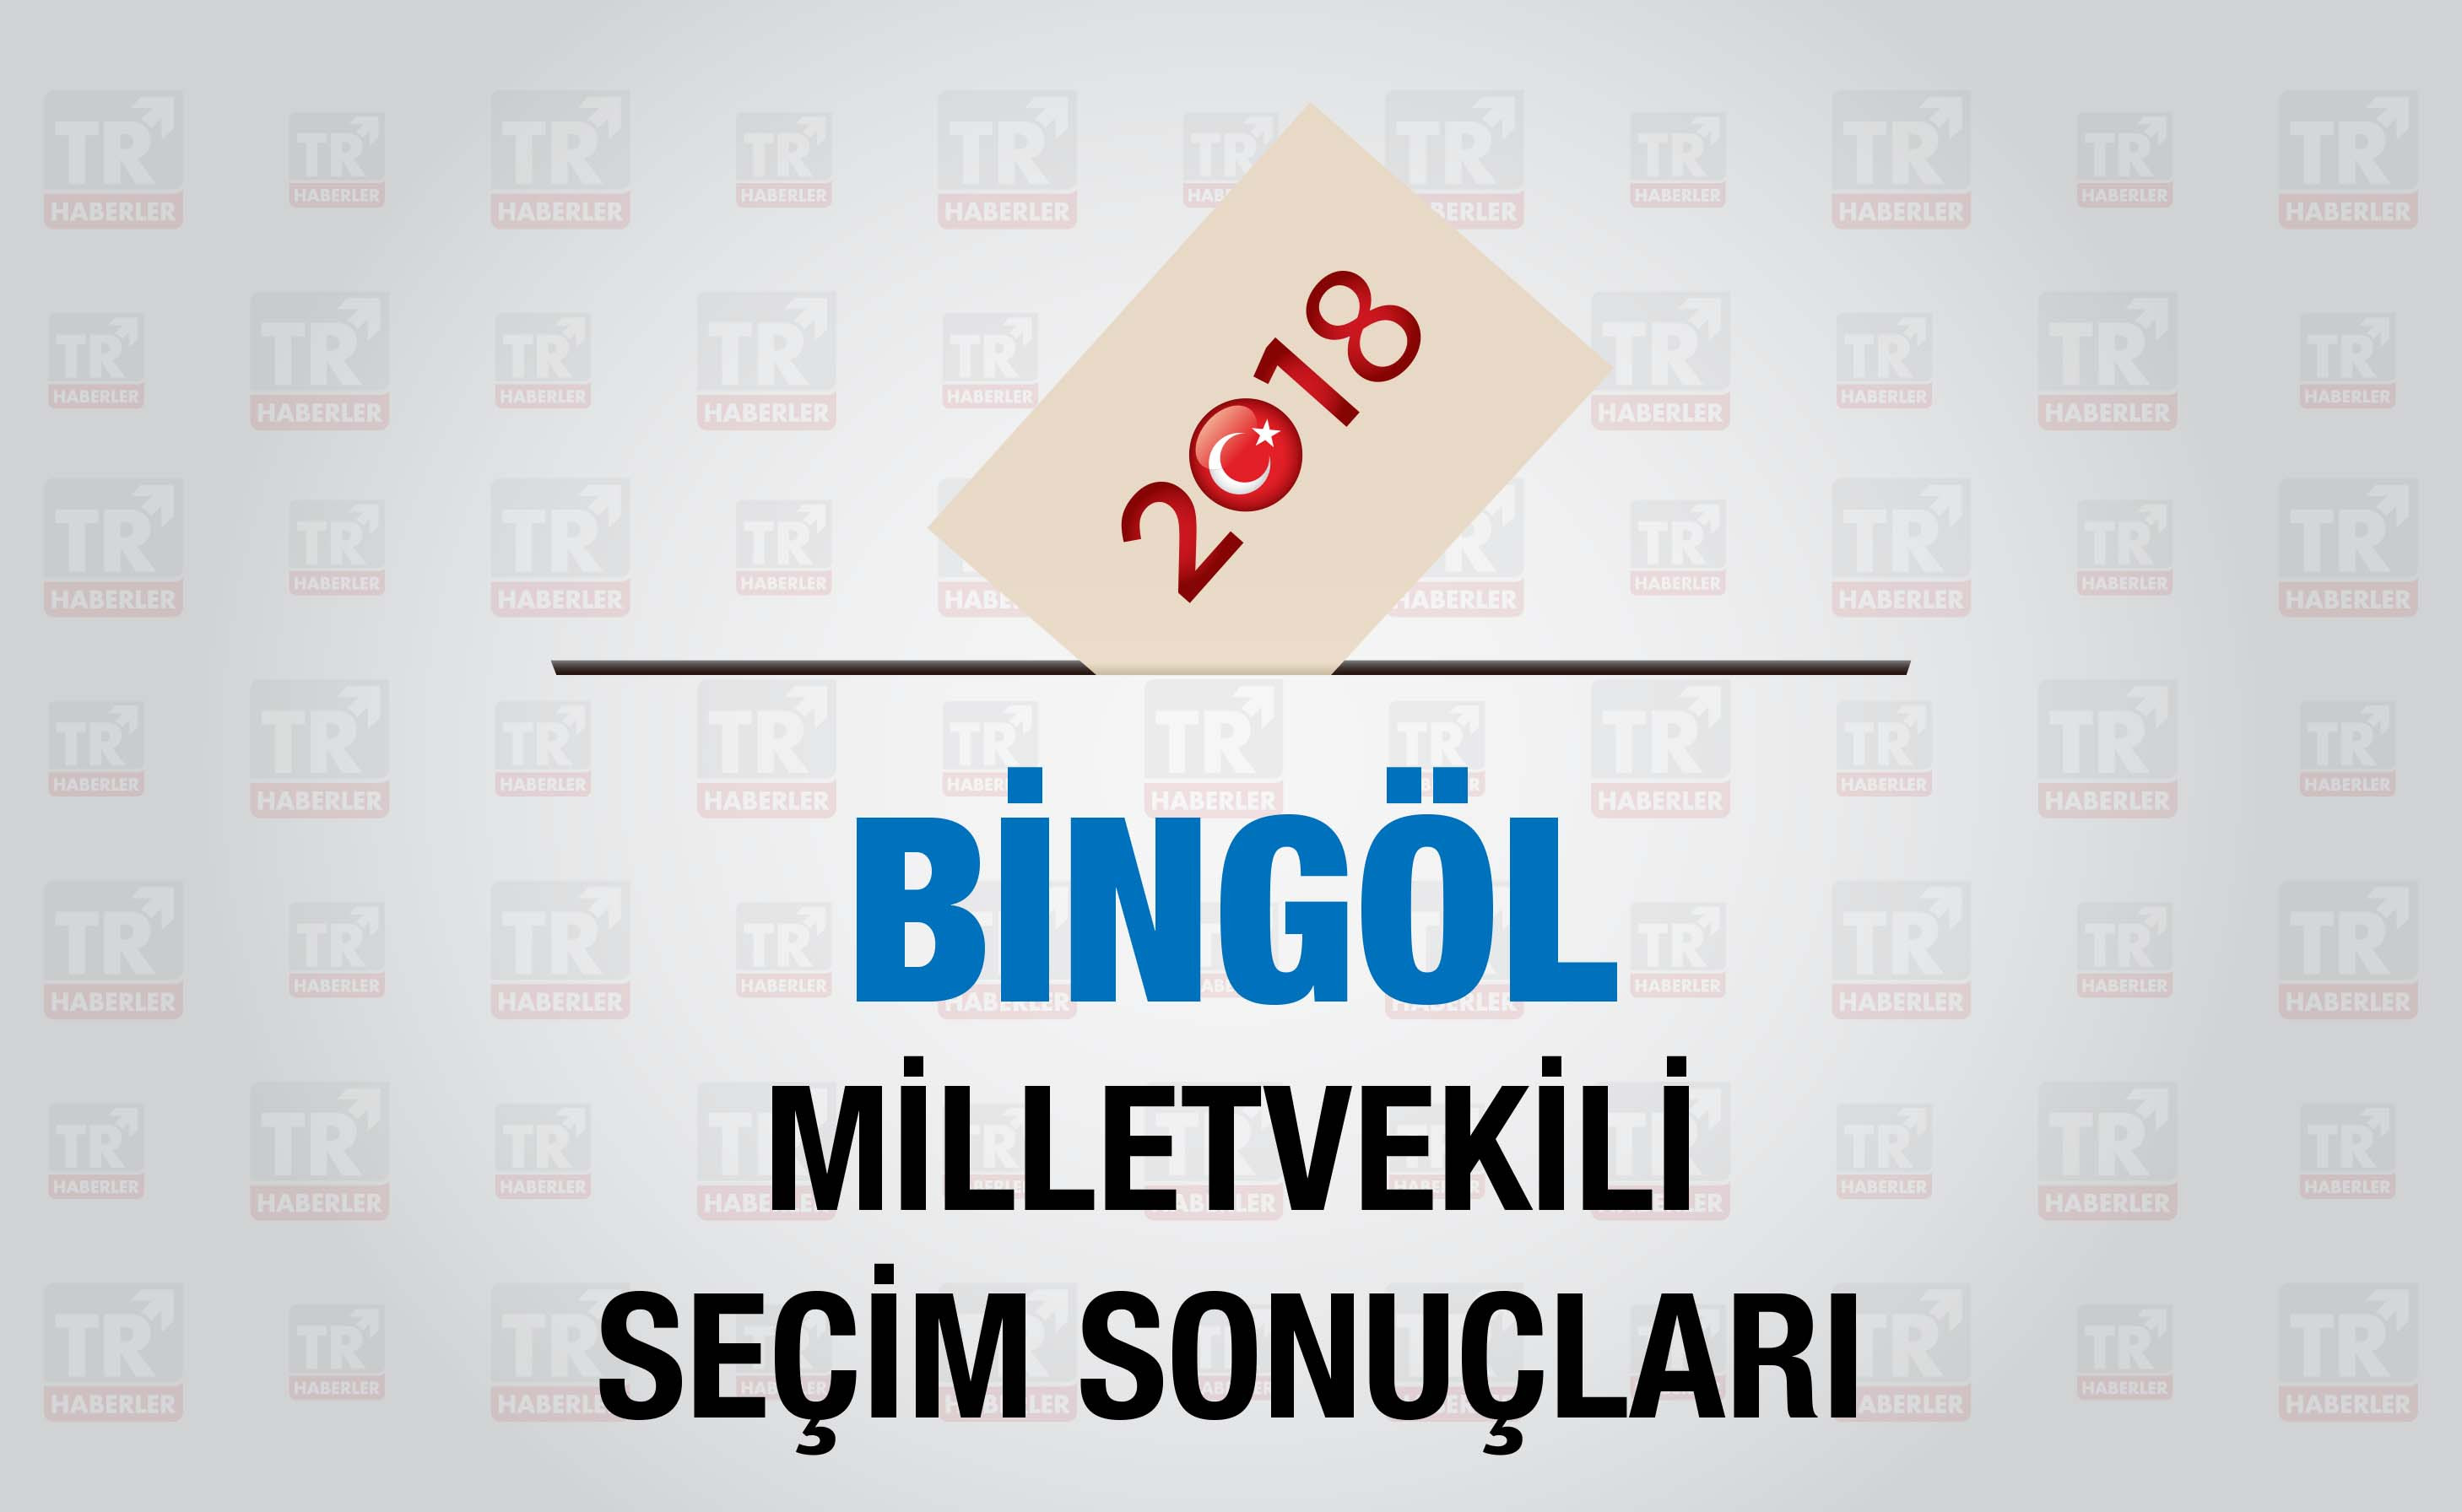 Bingöl seçim sonuçları : Bingöl Milletvekili seçim sonuçları - Seçim 2018